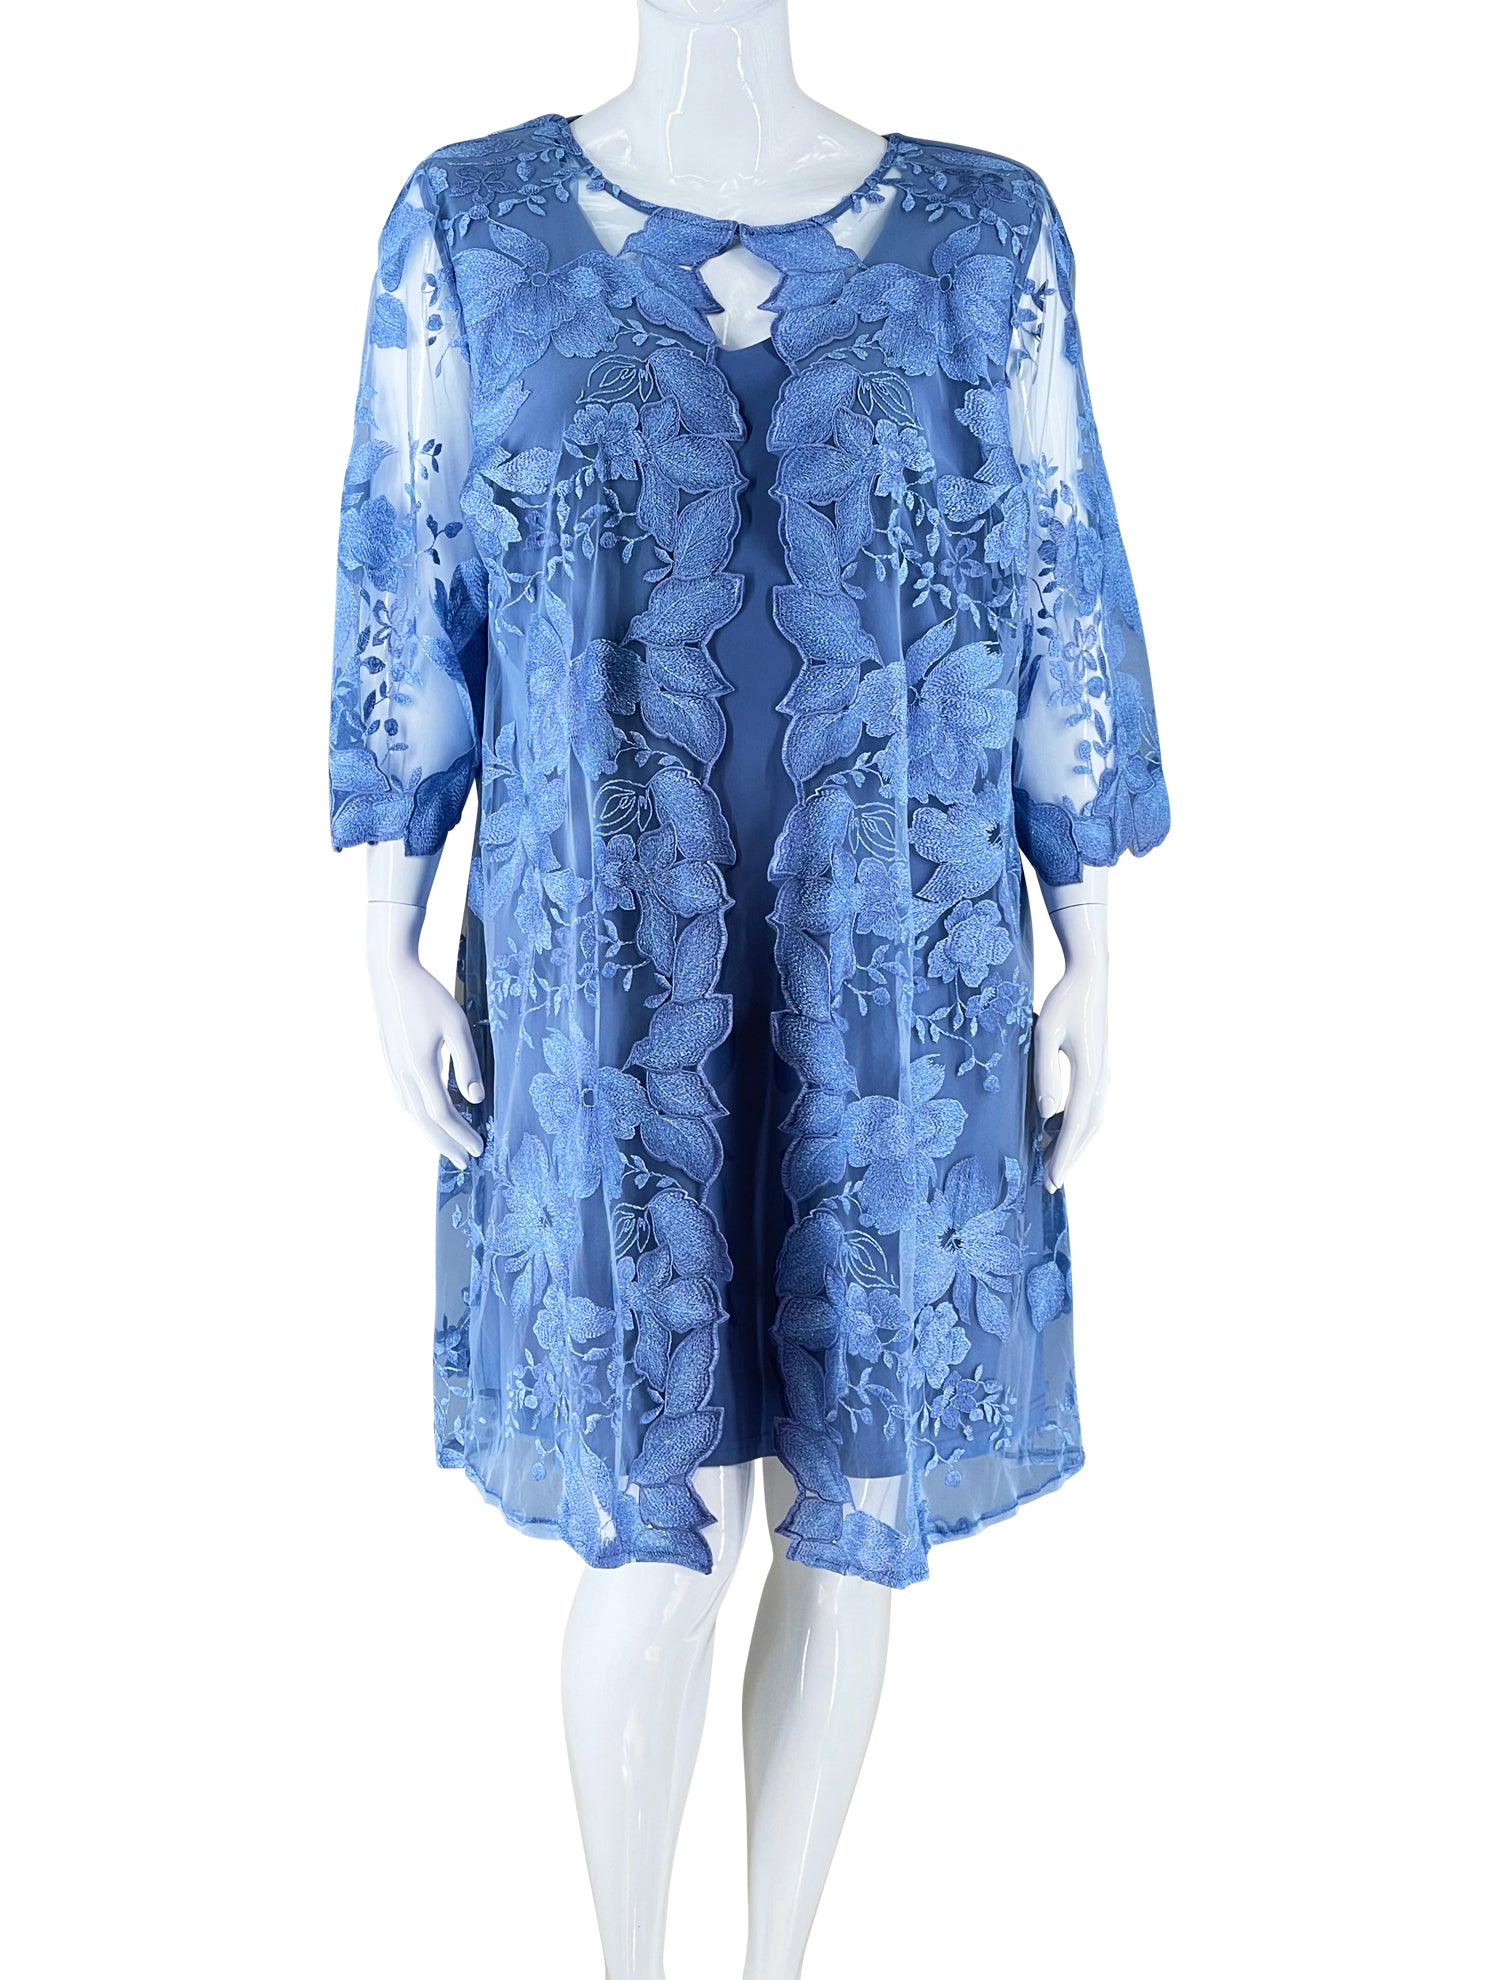 Alex Evening Pastel Blue Lace Dress